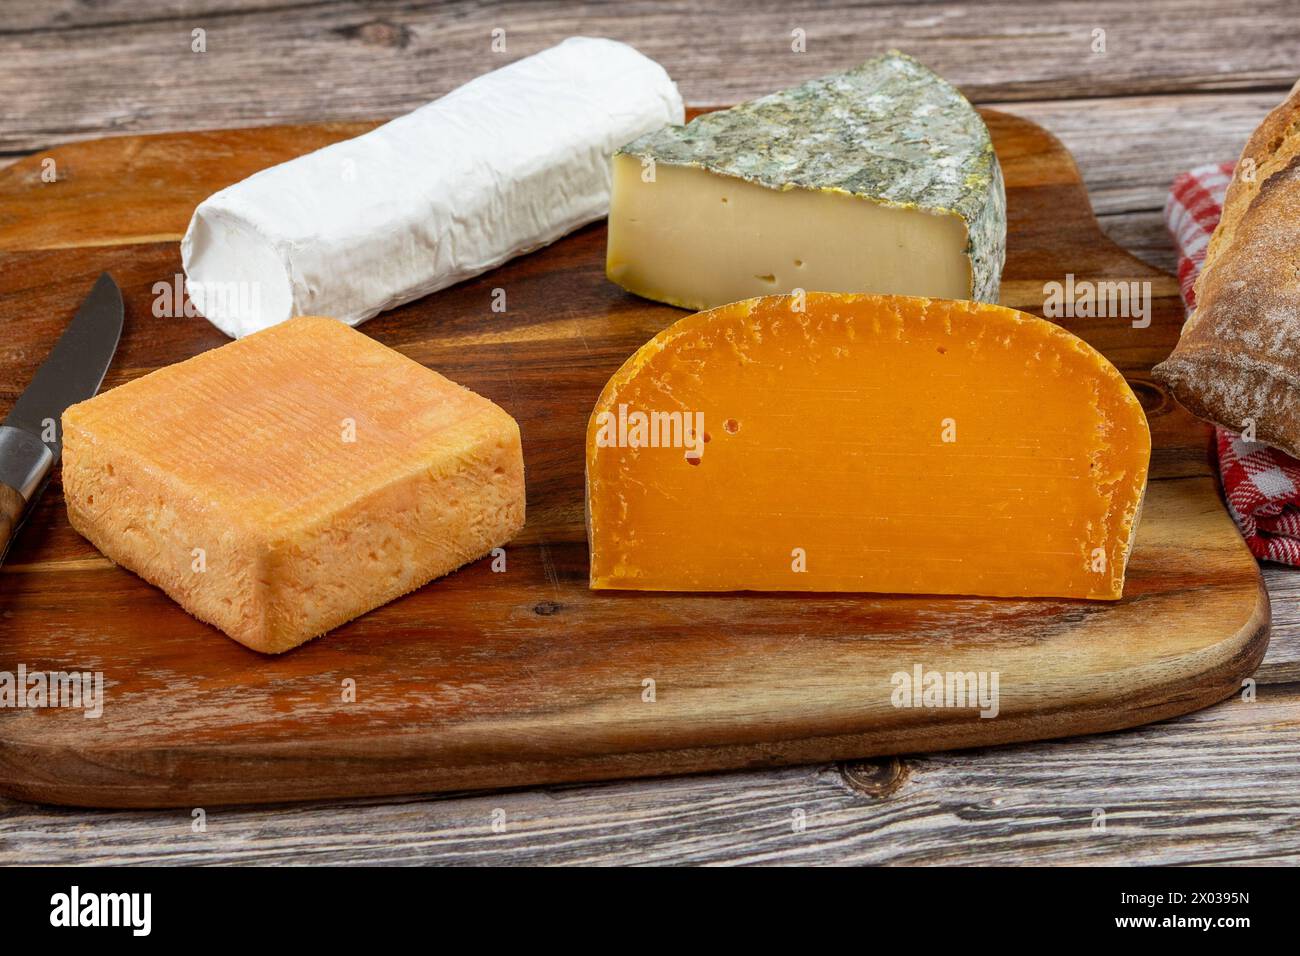 Plateau de fromages français, gros plan, sur une planche à découper Banque D'Images